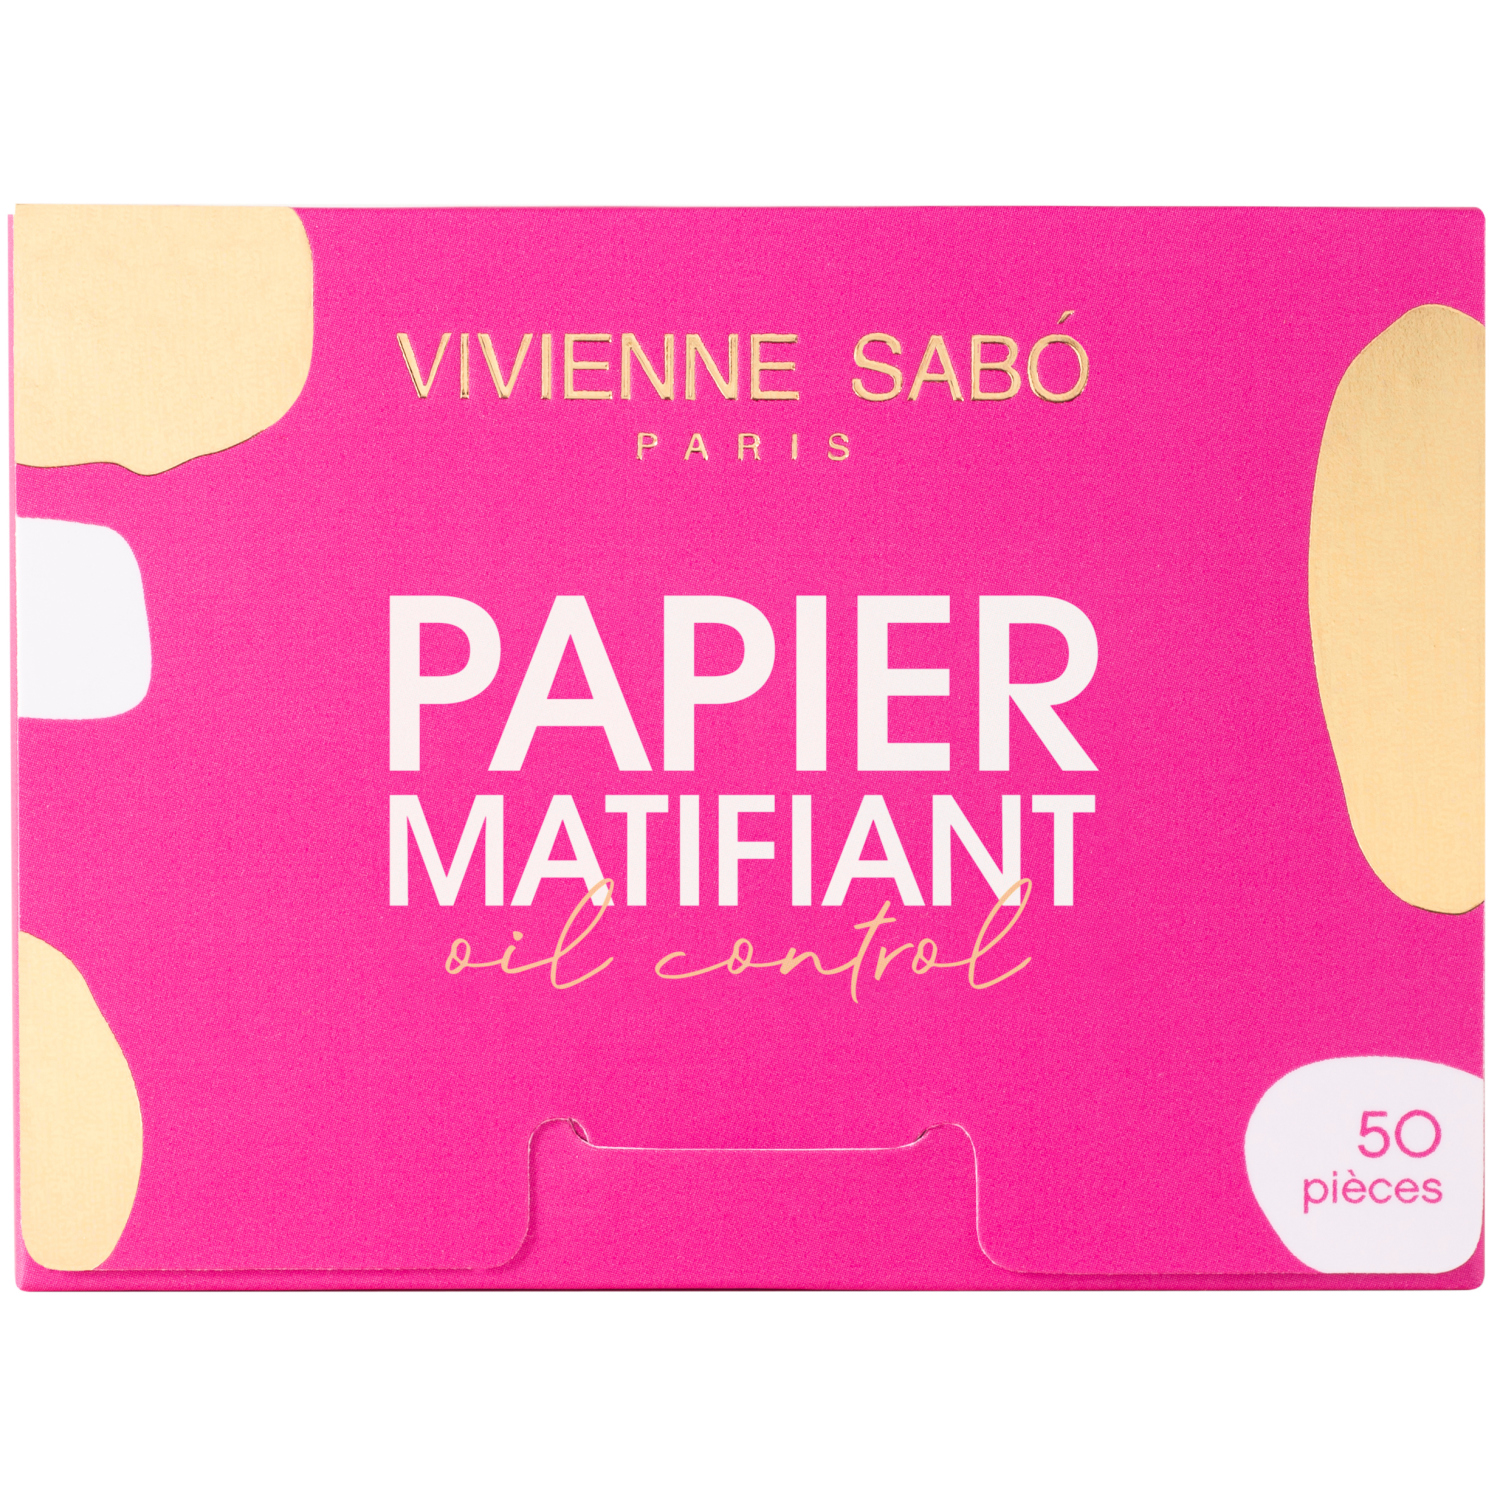 Матирующие салфетки Vivienne Sabo Papier Matifiant, моментальное удаление жирного блеска, прозрачно-розоватые, 50шт. матирующие салфетки